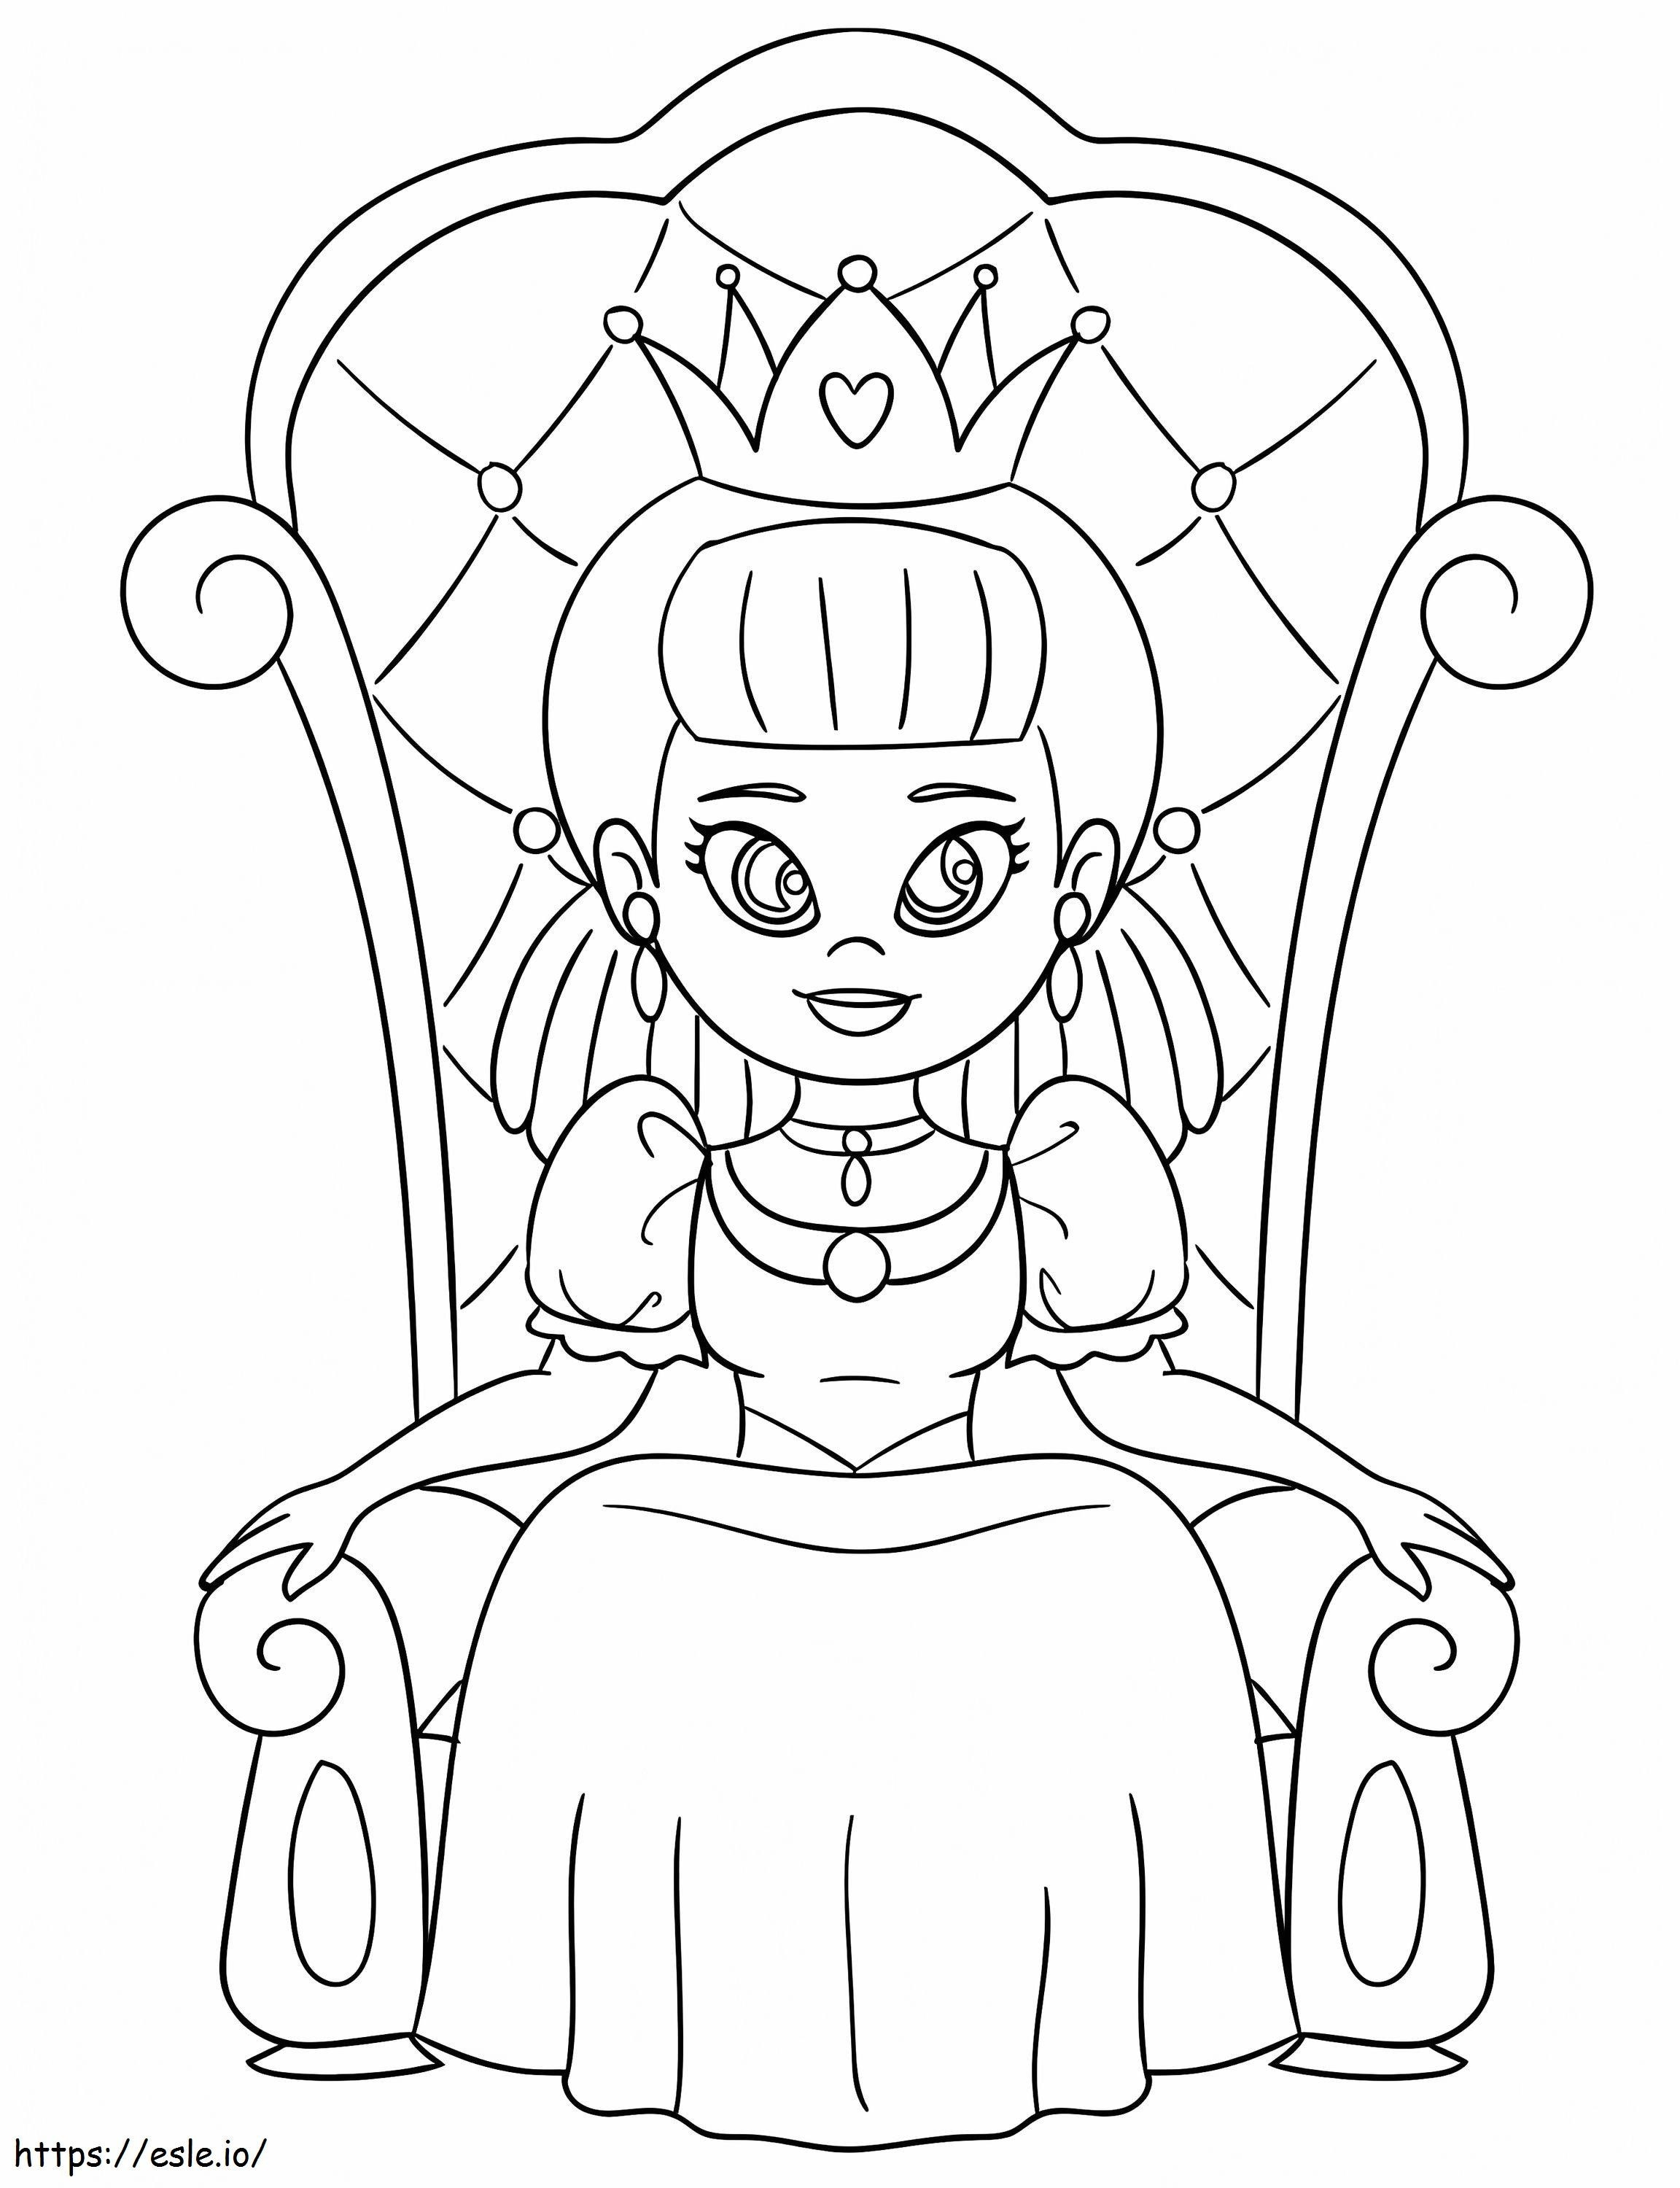 Regina sul trono da colorare